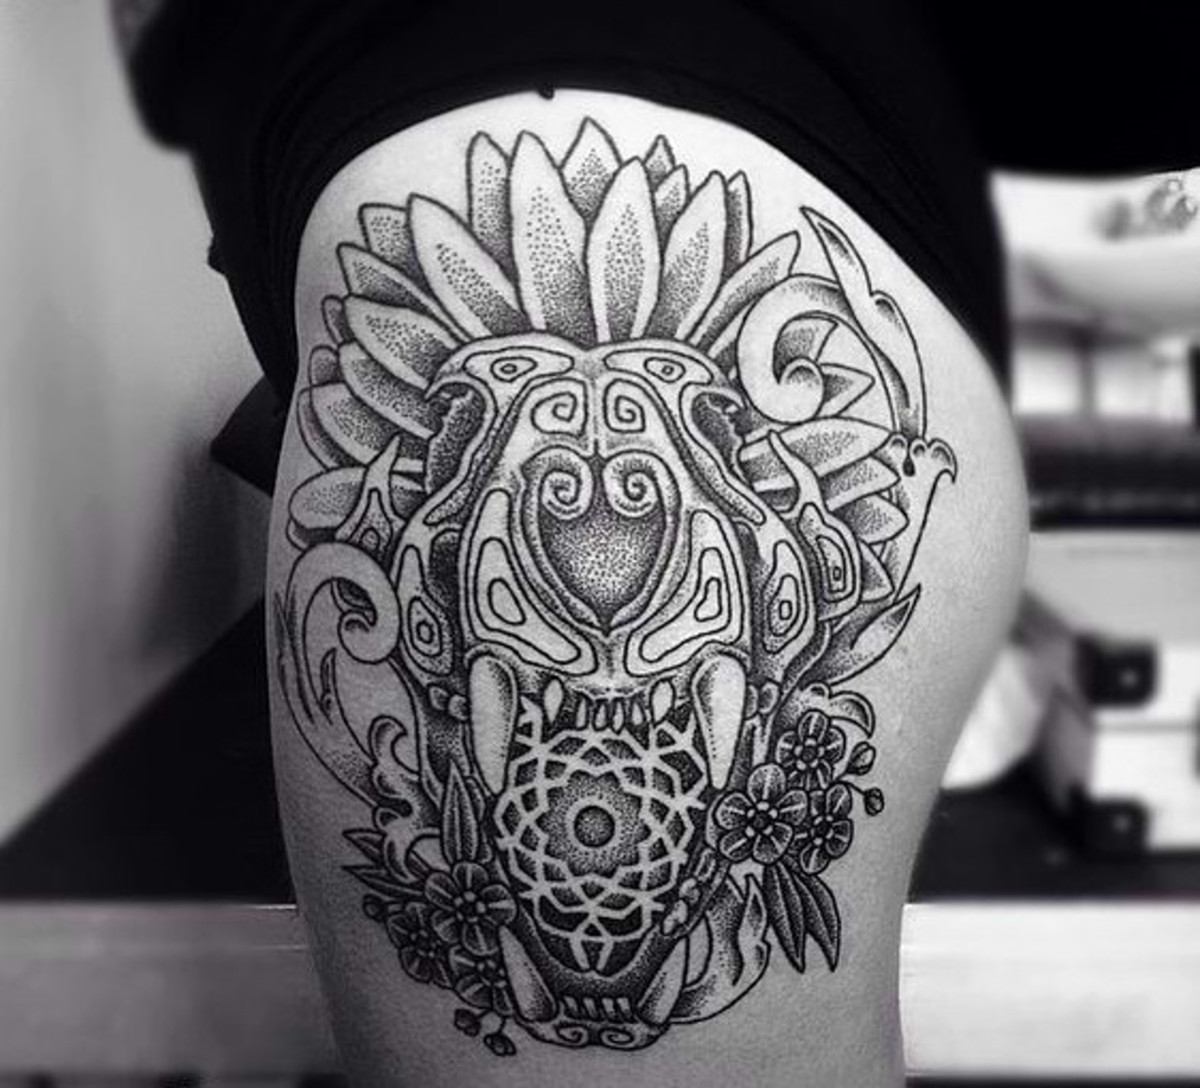 Lion tattoo idea | Lion tattoo, Lion forearm tattoos, Lion tattoo design